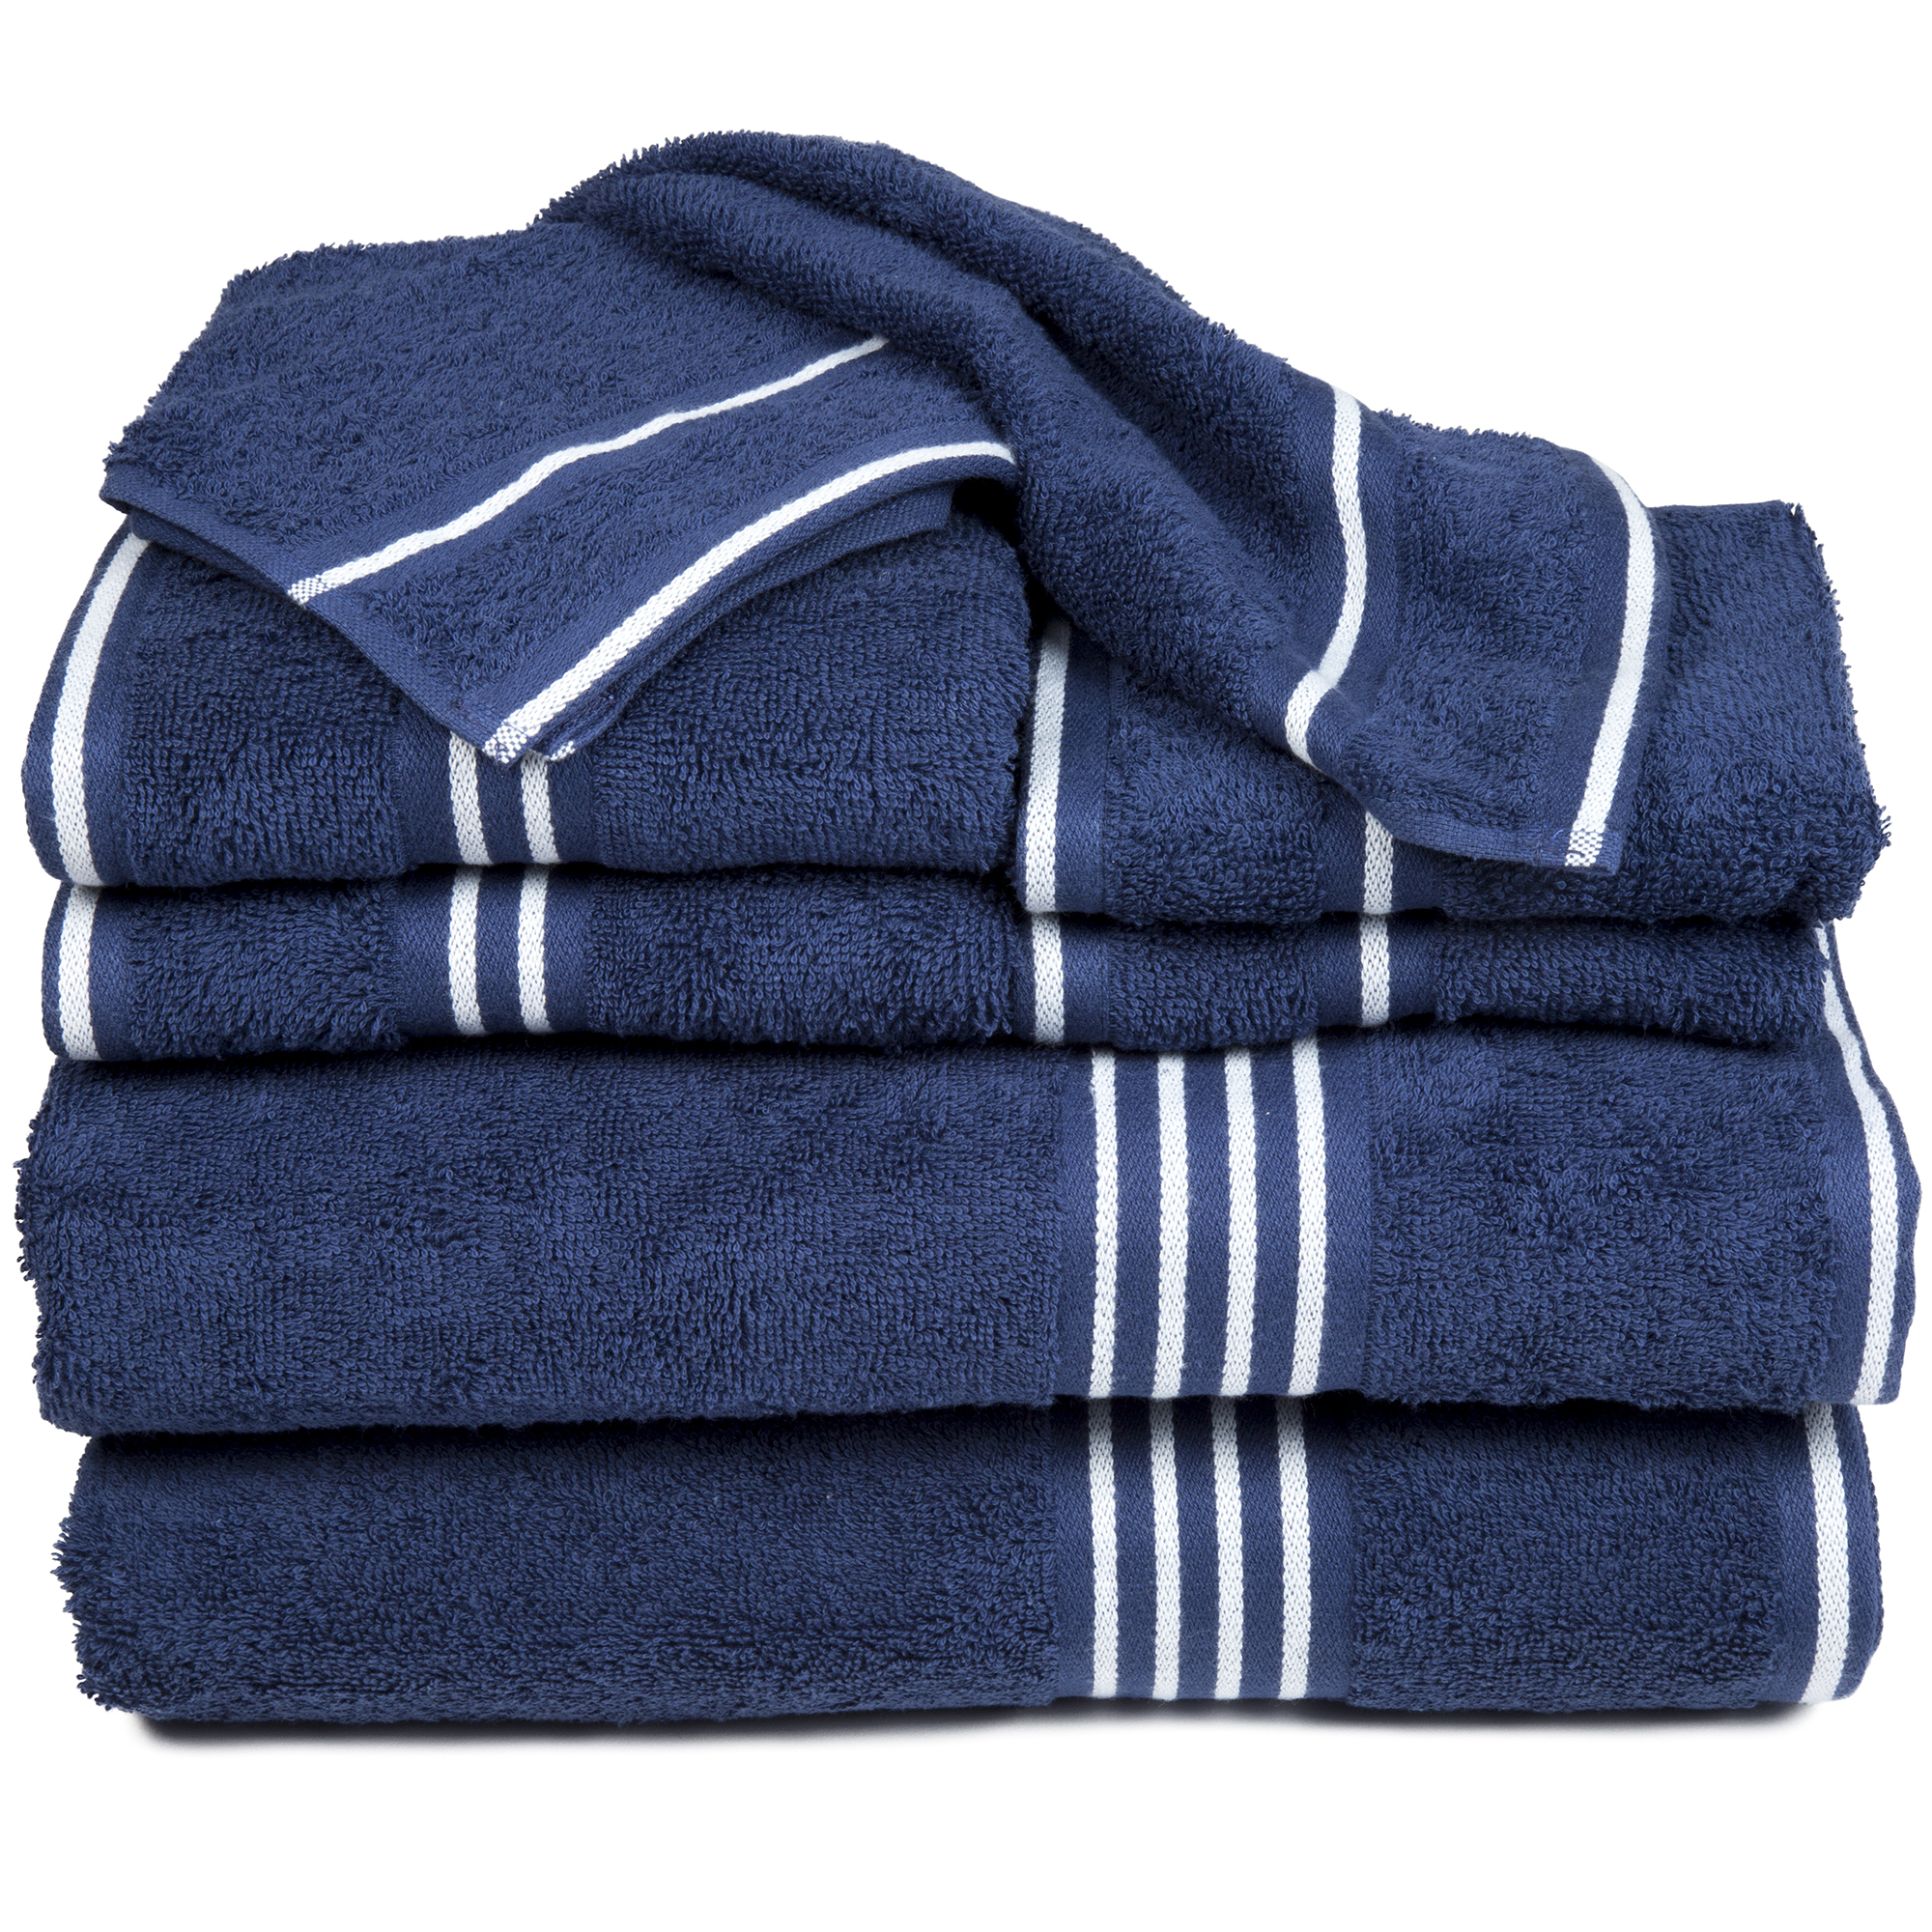 8 Piece 100% Cotton Soft Towel Set - Blue